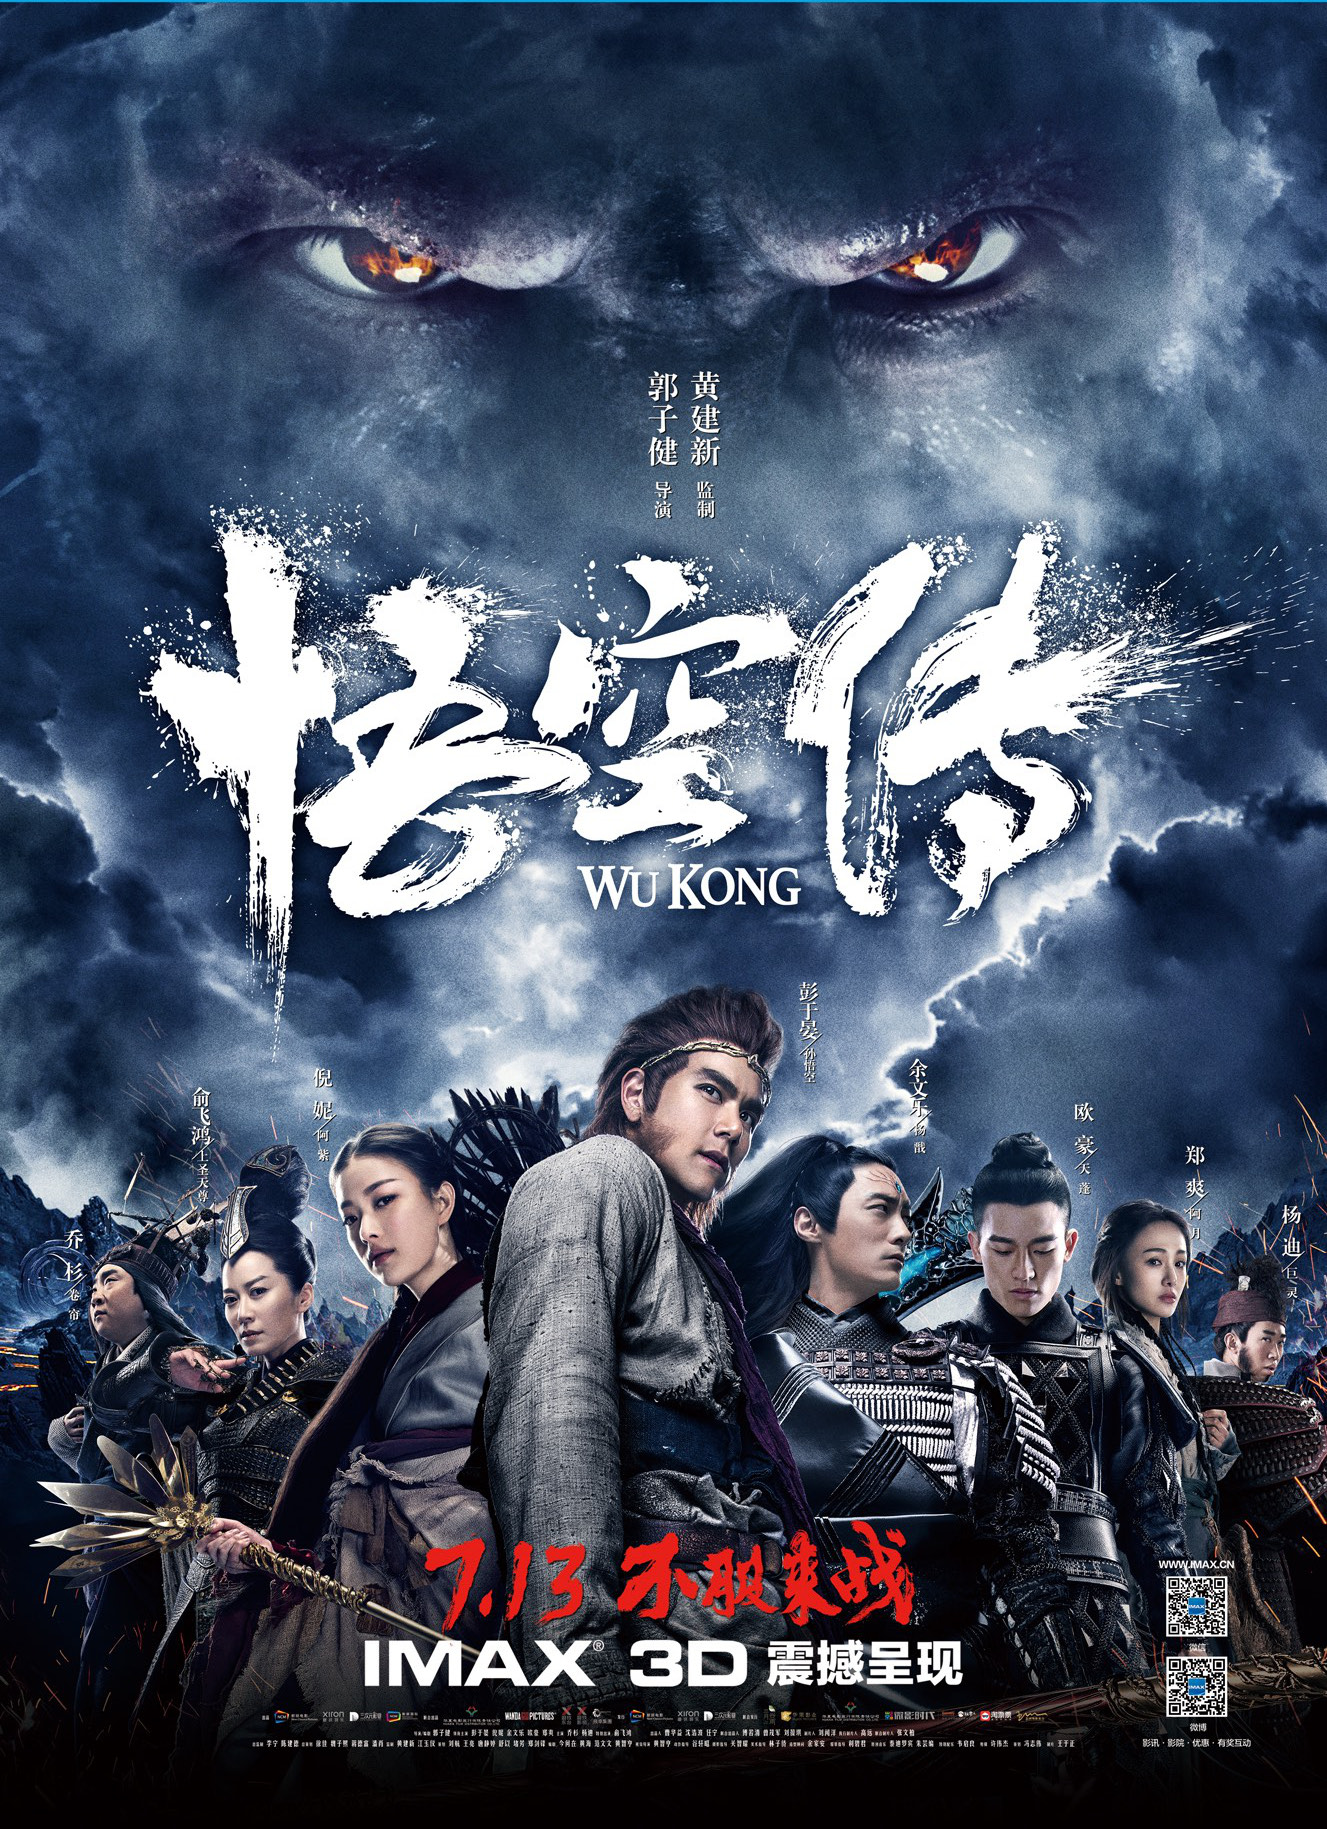 ดูหนังออนไลน์ WUKONG 2017 หงอคง กำเนิดเทพเจ้าวานร ดูหนังชนโรง